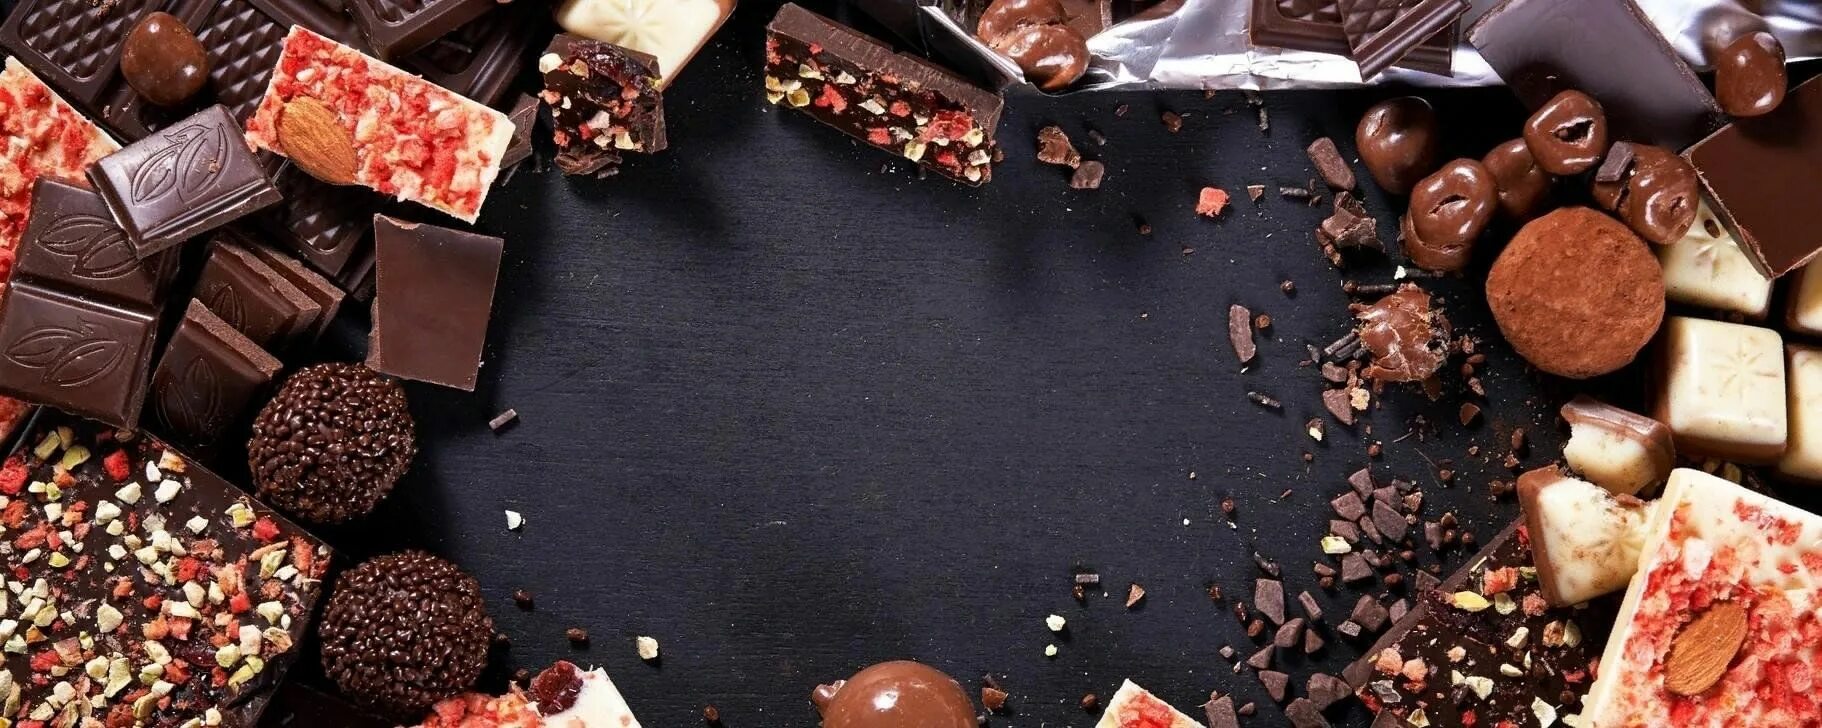 Тема шоколад. Шоколад фон. Торты. Фон сладости. Кондитерские изделия шоколад.